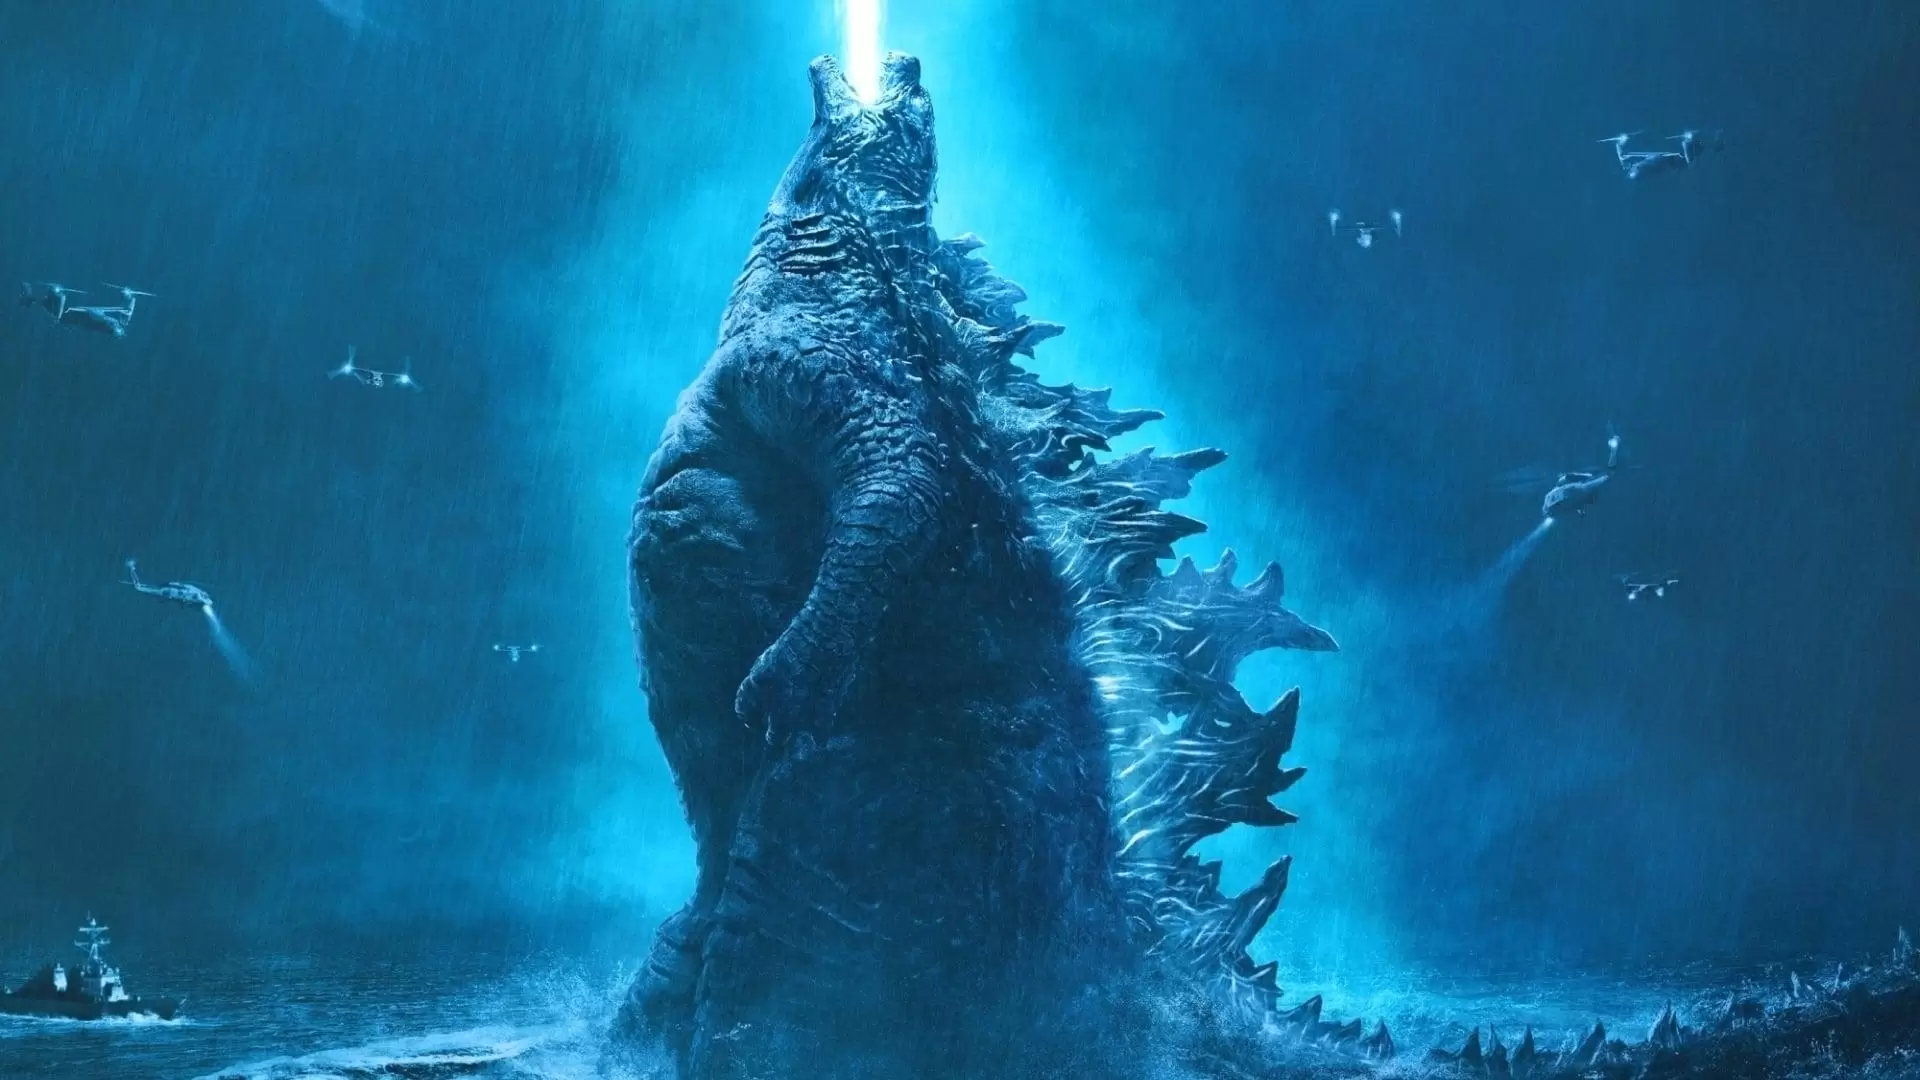 دانلود فیلم Godzilla: King of the Monsters 2019 (گودزیلا: سلطان هیولاها) با زیرنویس فارسی و تماشای آنلاین